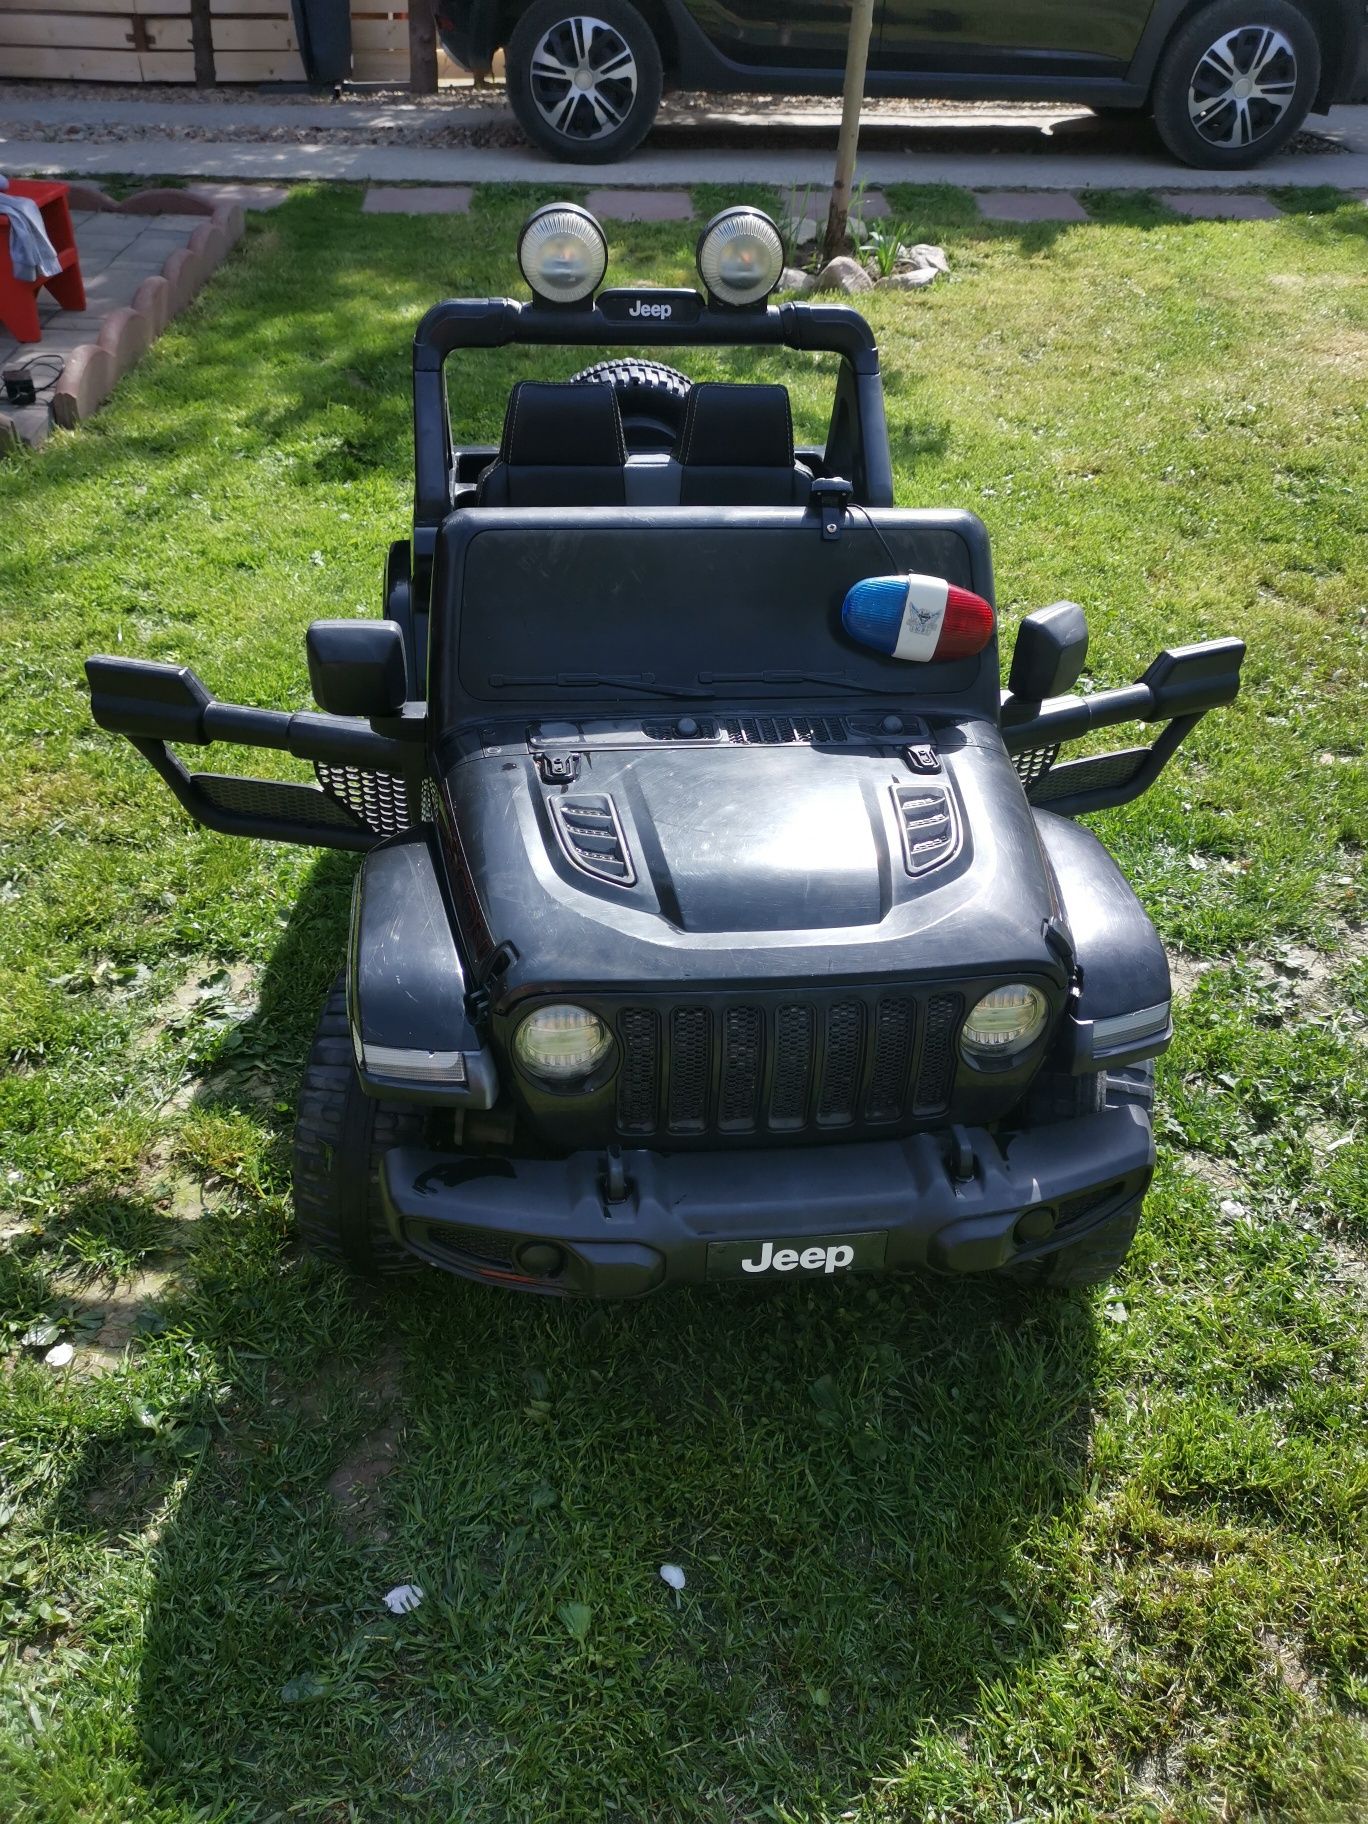 Masinuta electrica Jeep 4x4 copii